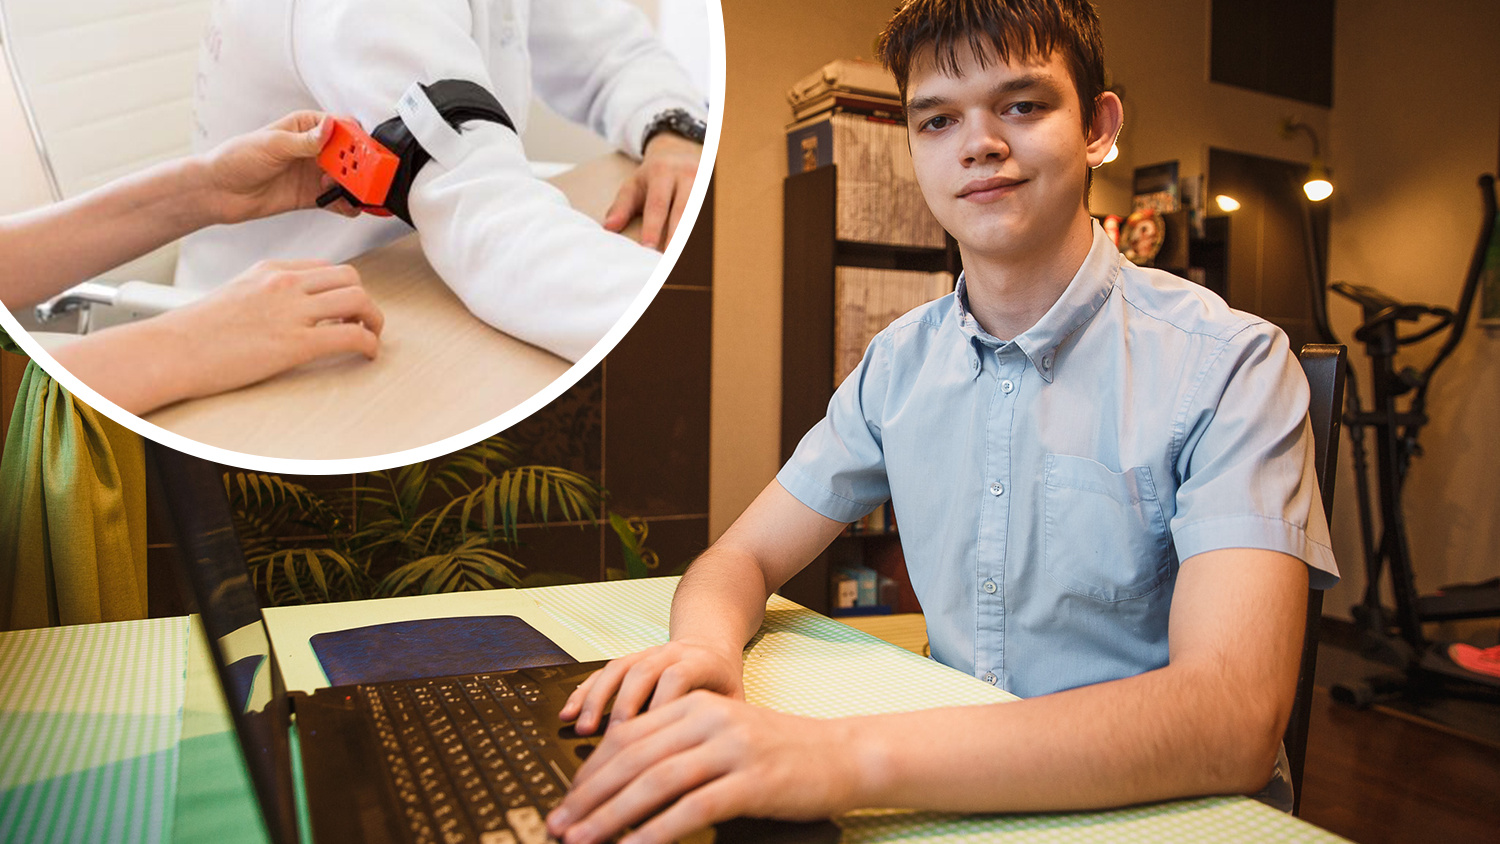 Сибирский школьник изобрел умный жгут для остановки кровотечения. Скоро его запустят в производство